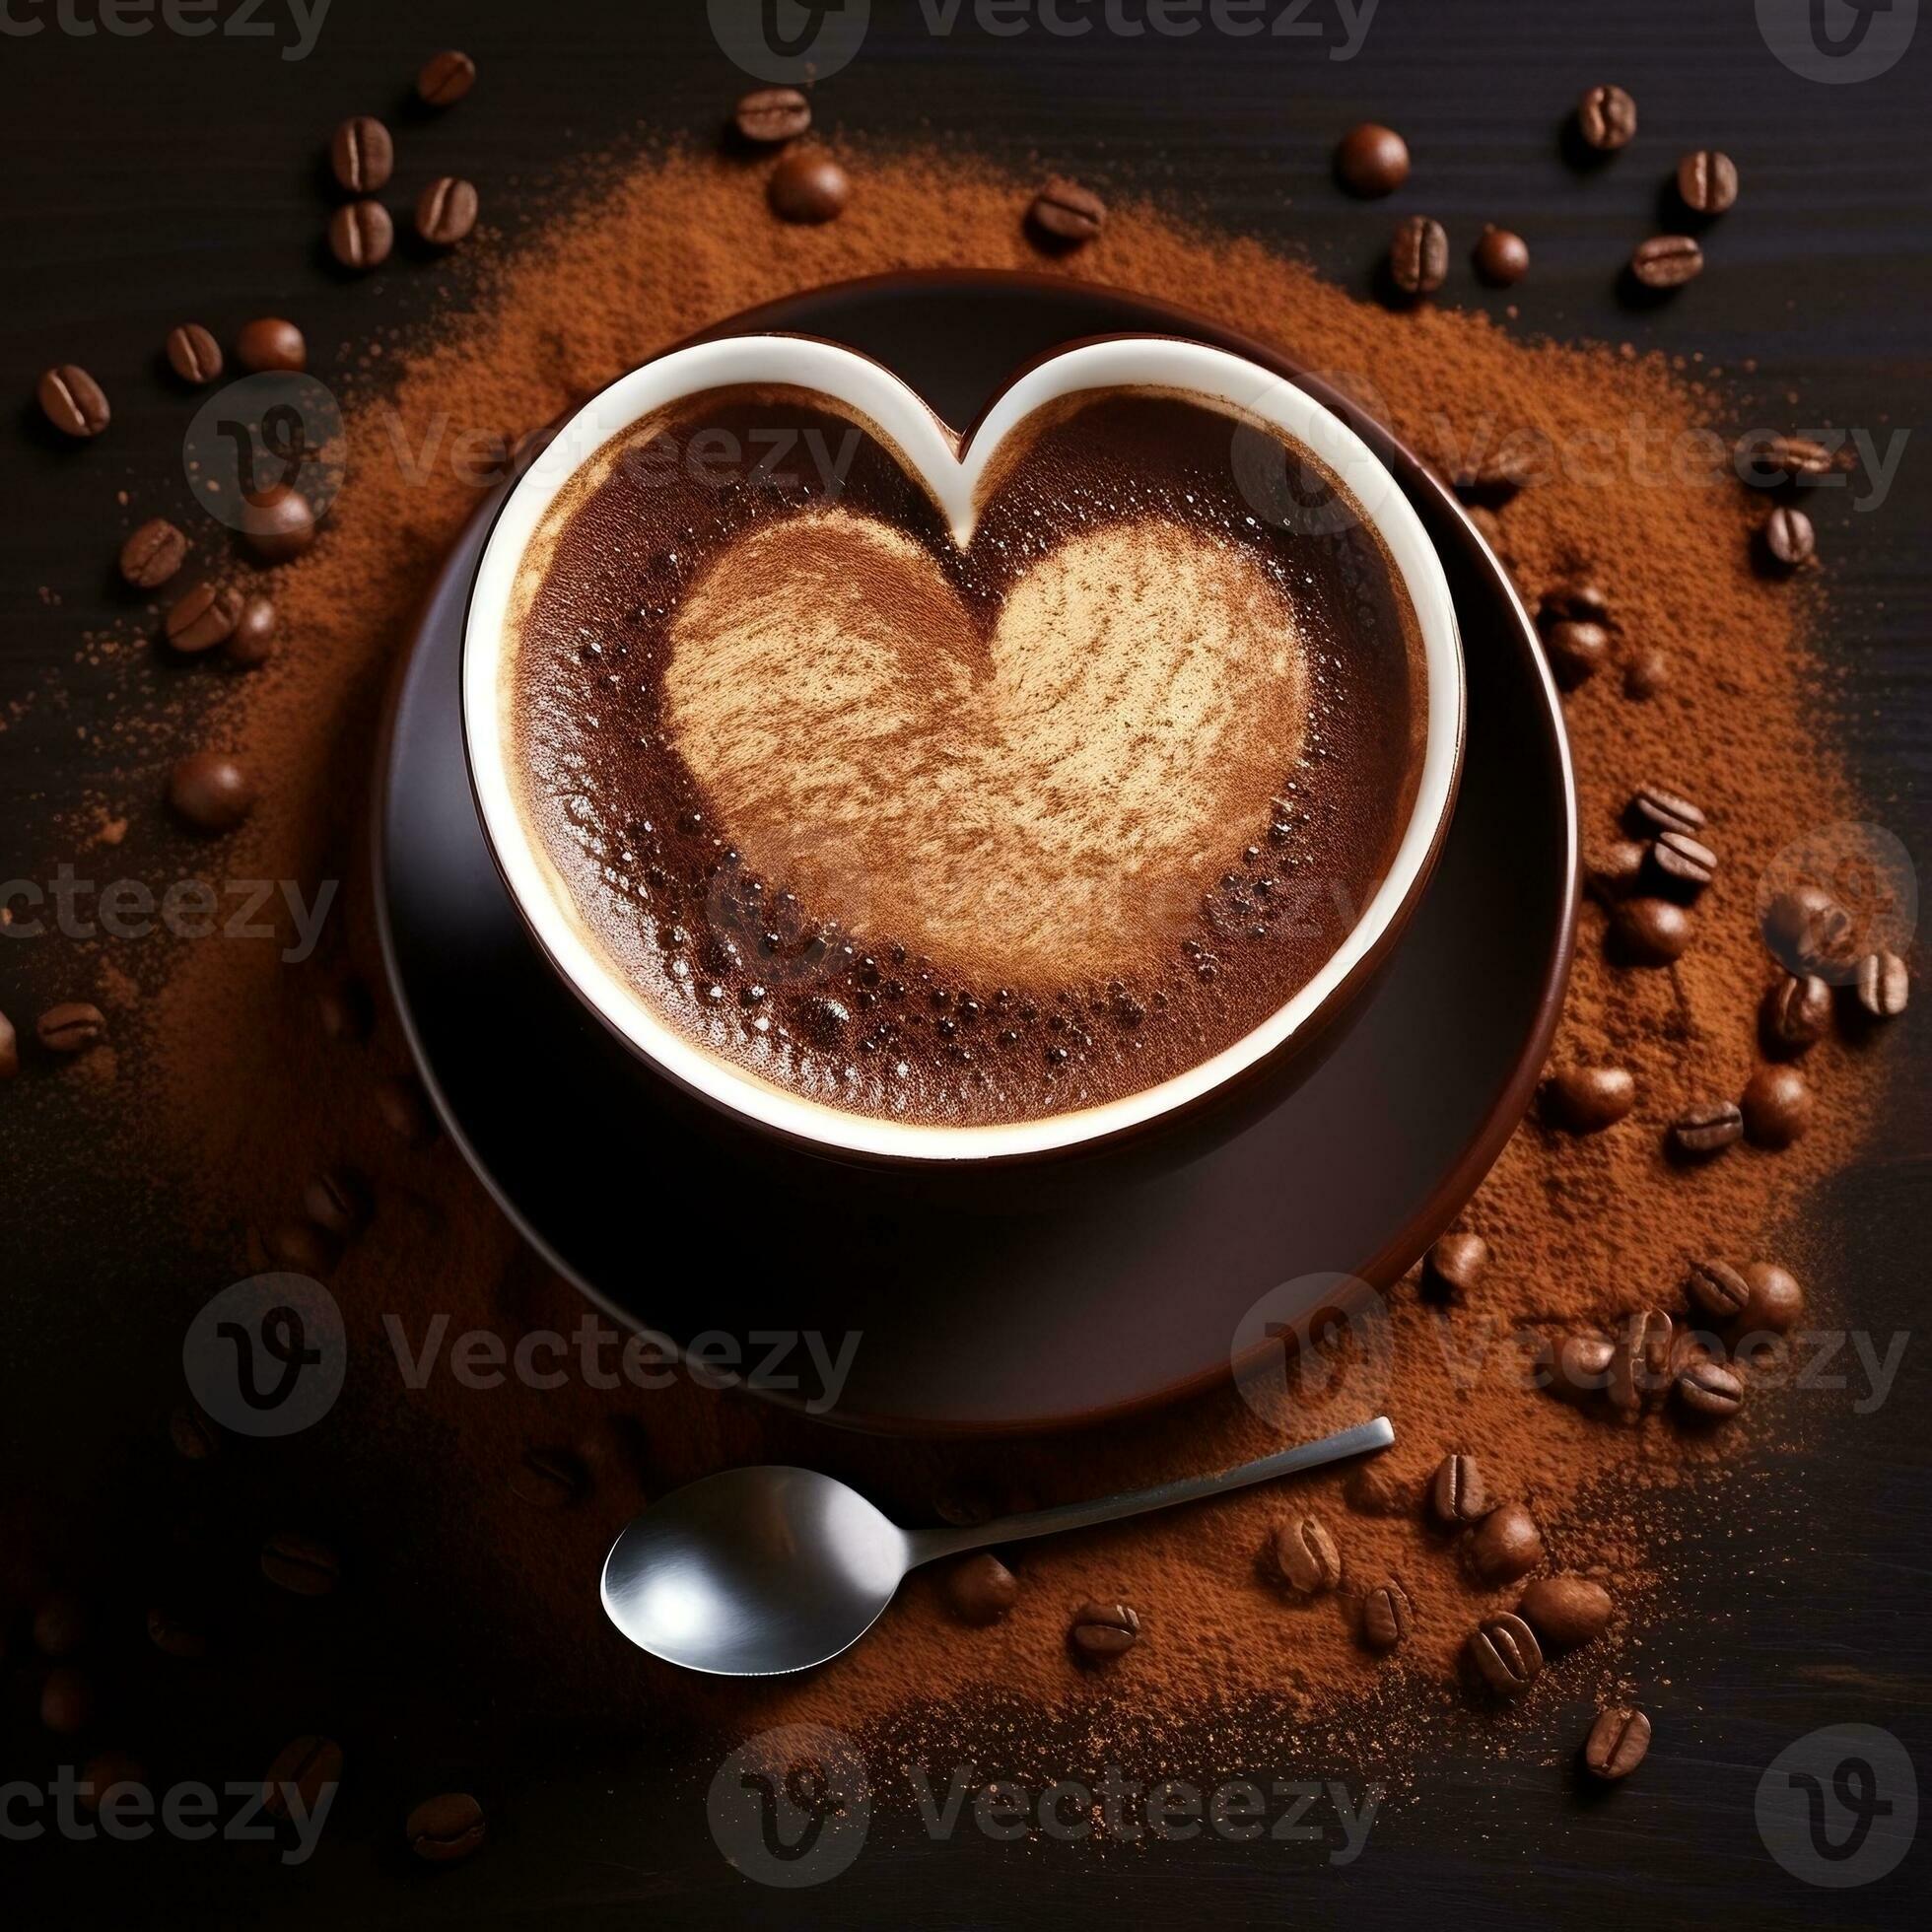 https://static.vecteezy.com/ti/fotos-kostenlos/p2/27074280-tasse-von-kaffee-milch-mit-ein-prise-von-schokolade-pulver-im-das-gestalten-von-ein-herz-generativ-ai-foto.jpeg